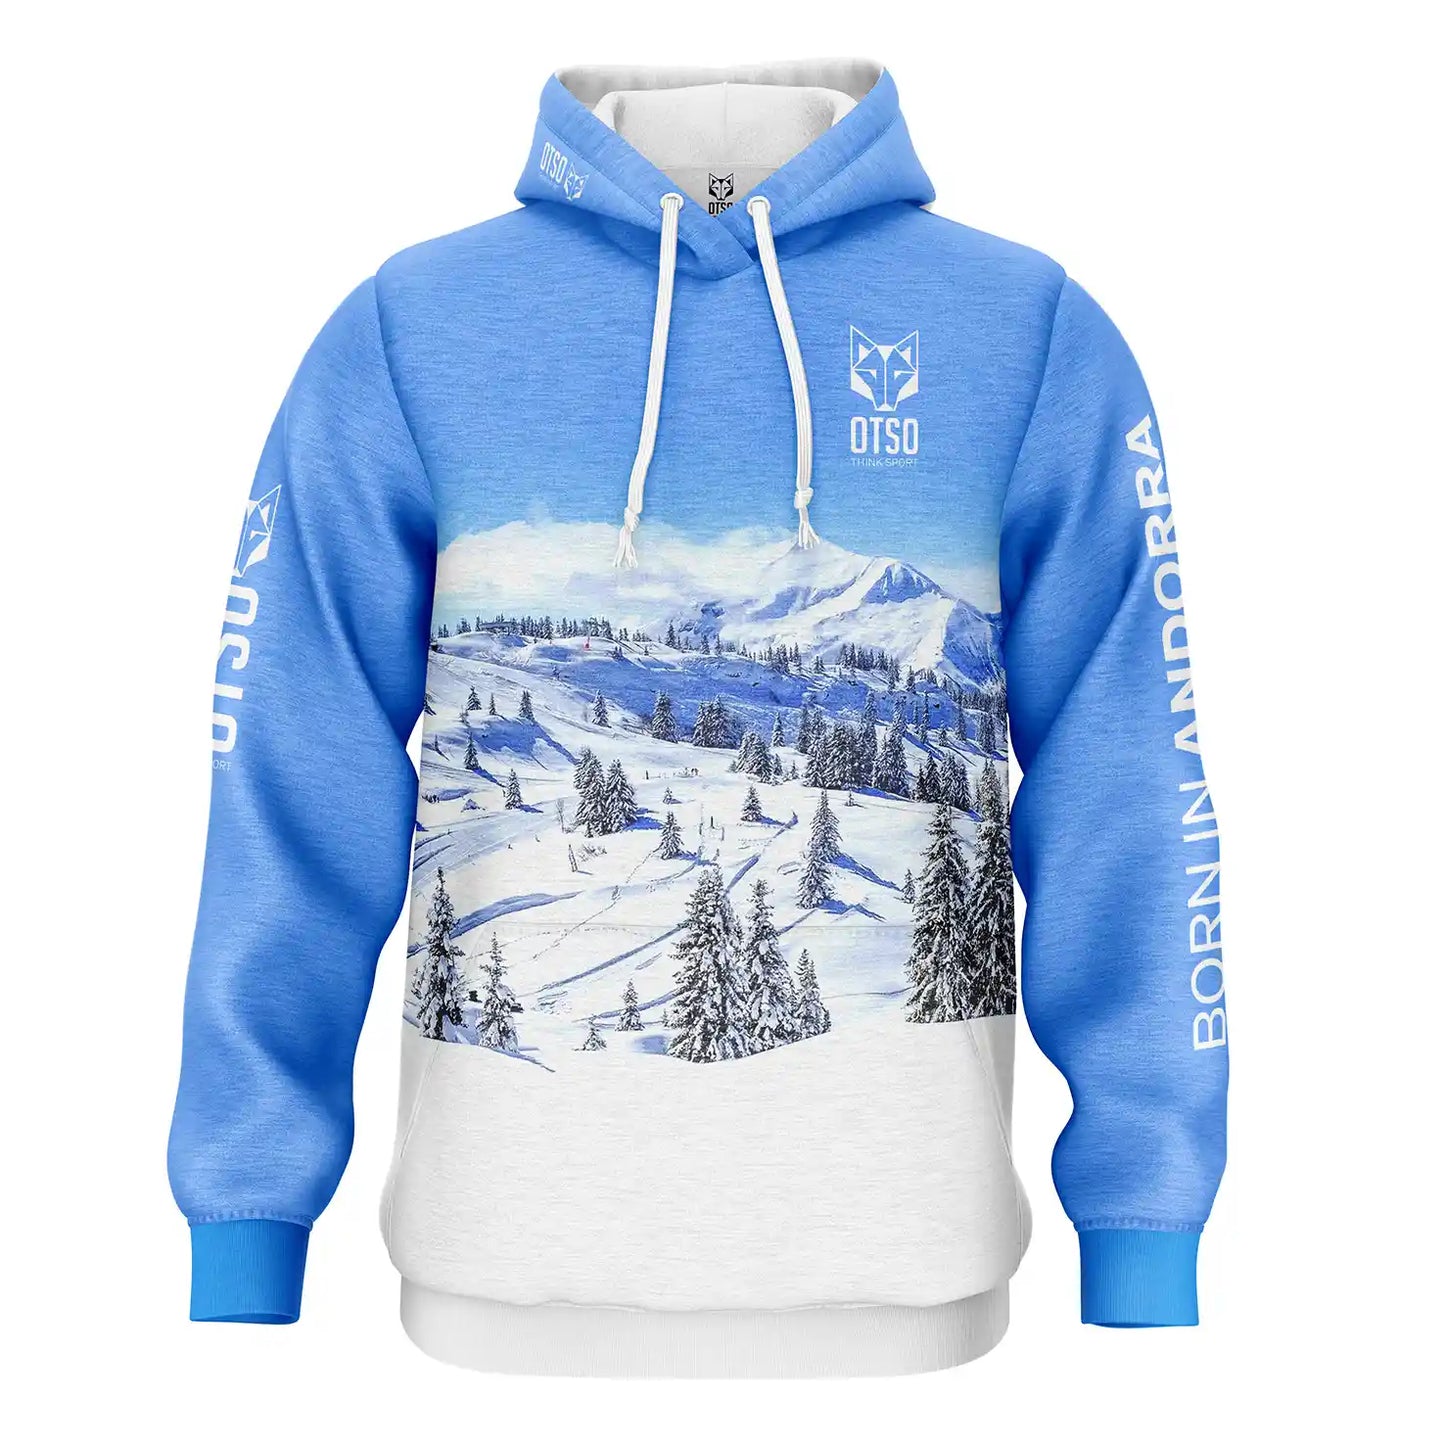 Snow Forest sweatshirt